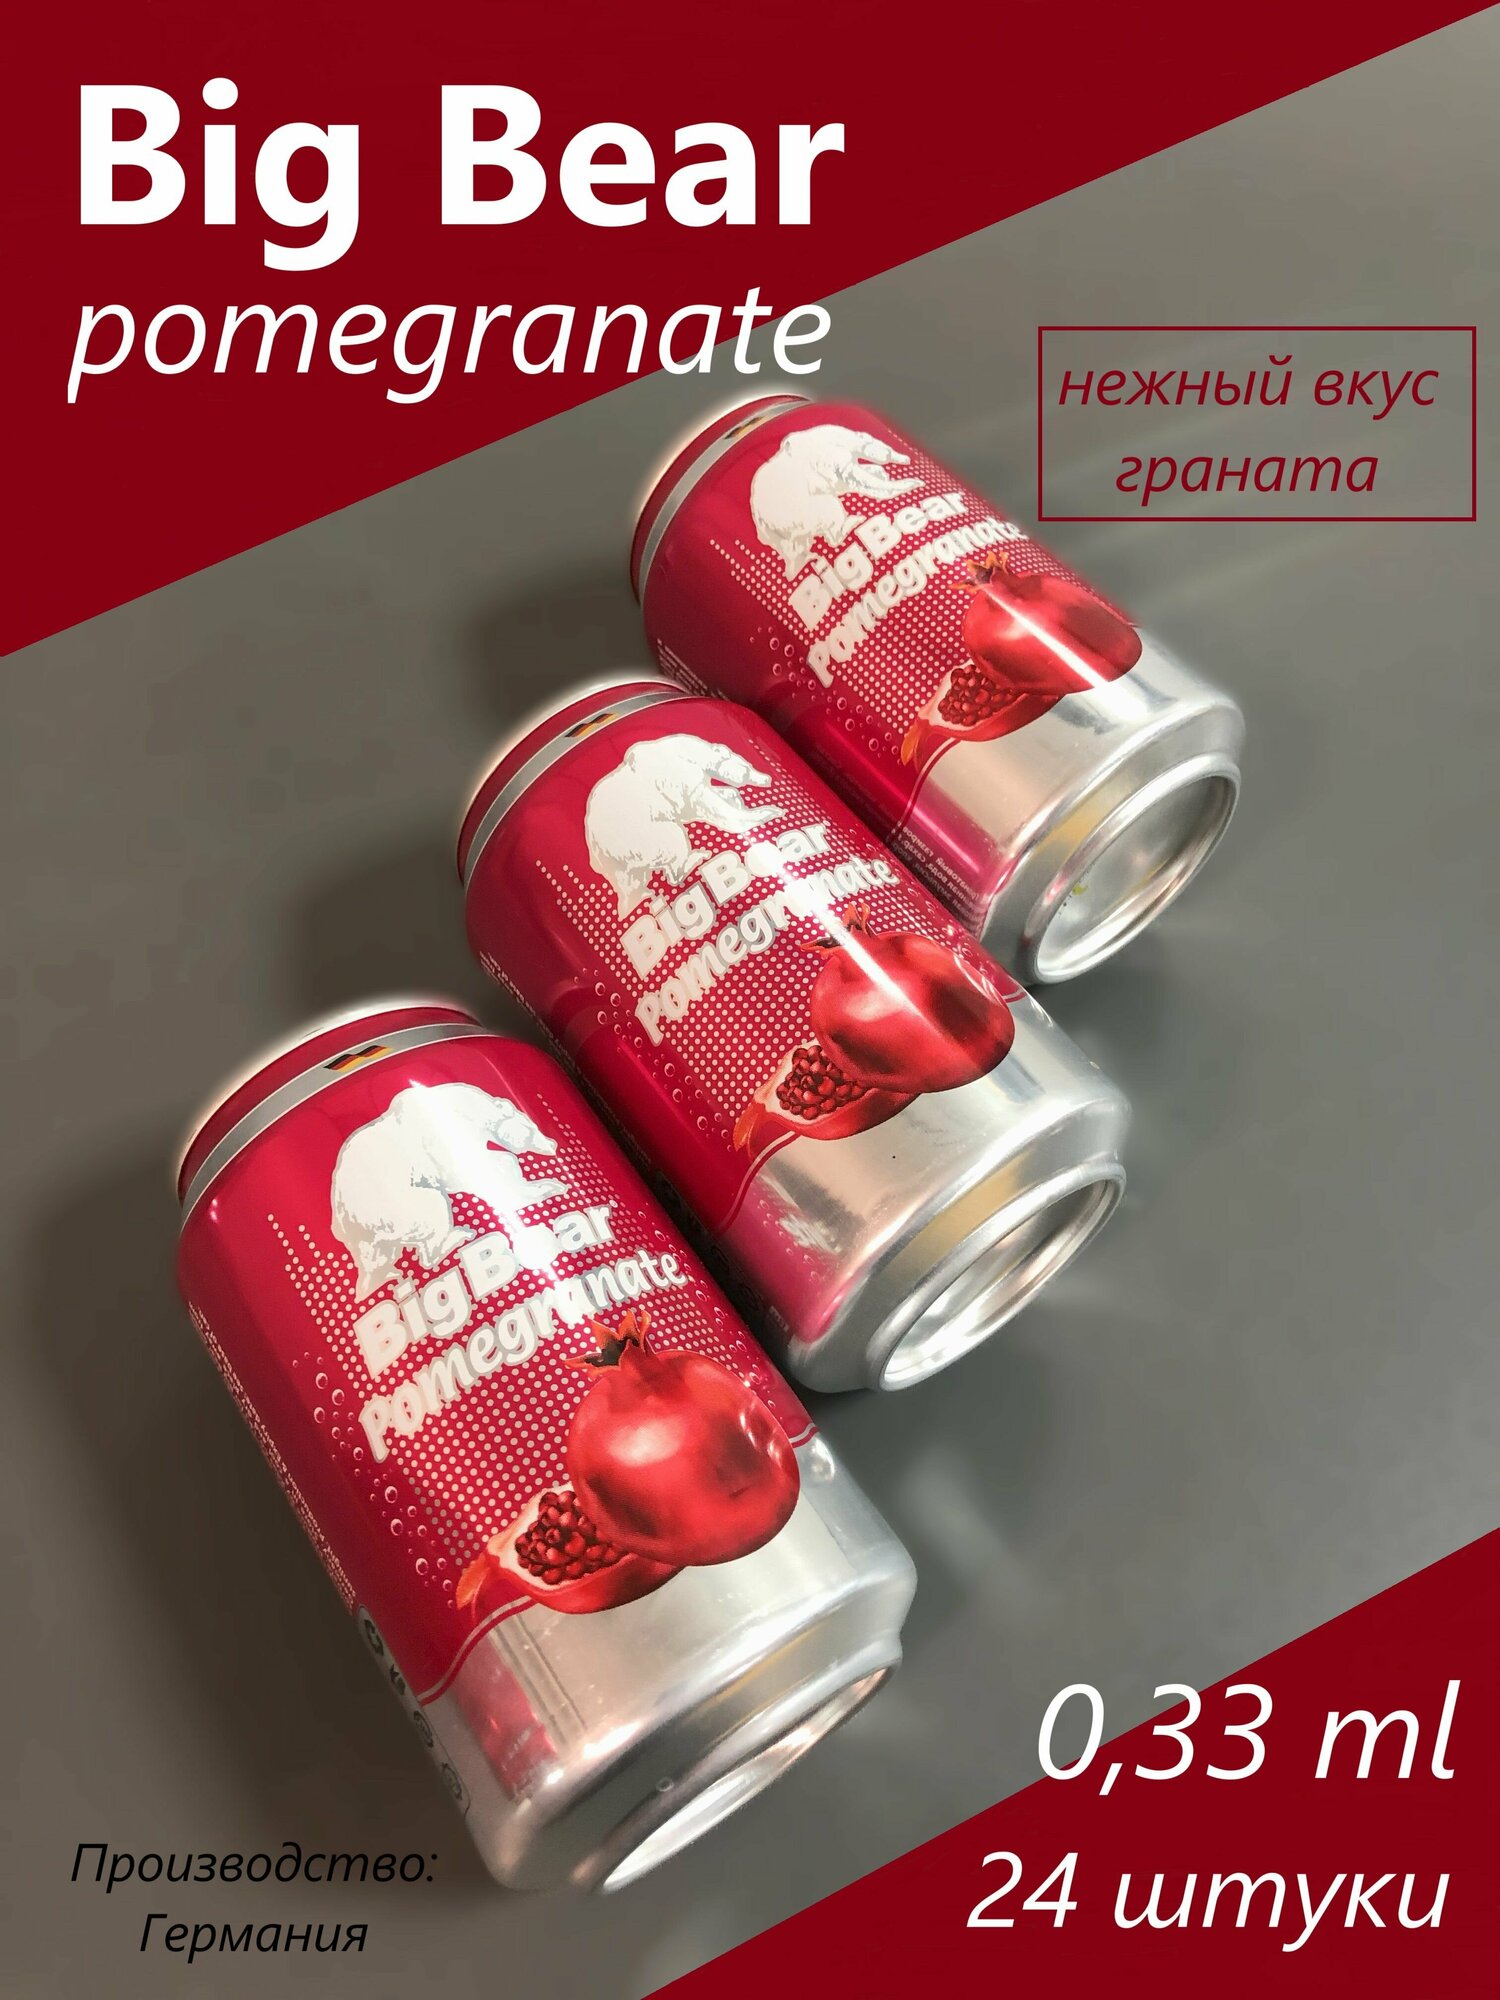 Big Bear Pomegranate (Germany); Большой Медведь гранат (Германия) 0.33 л х 24 банки; как кока-кола, только вкуснее)